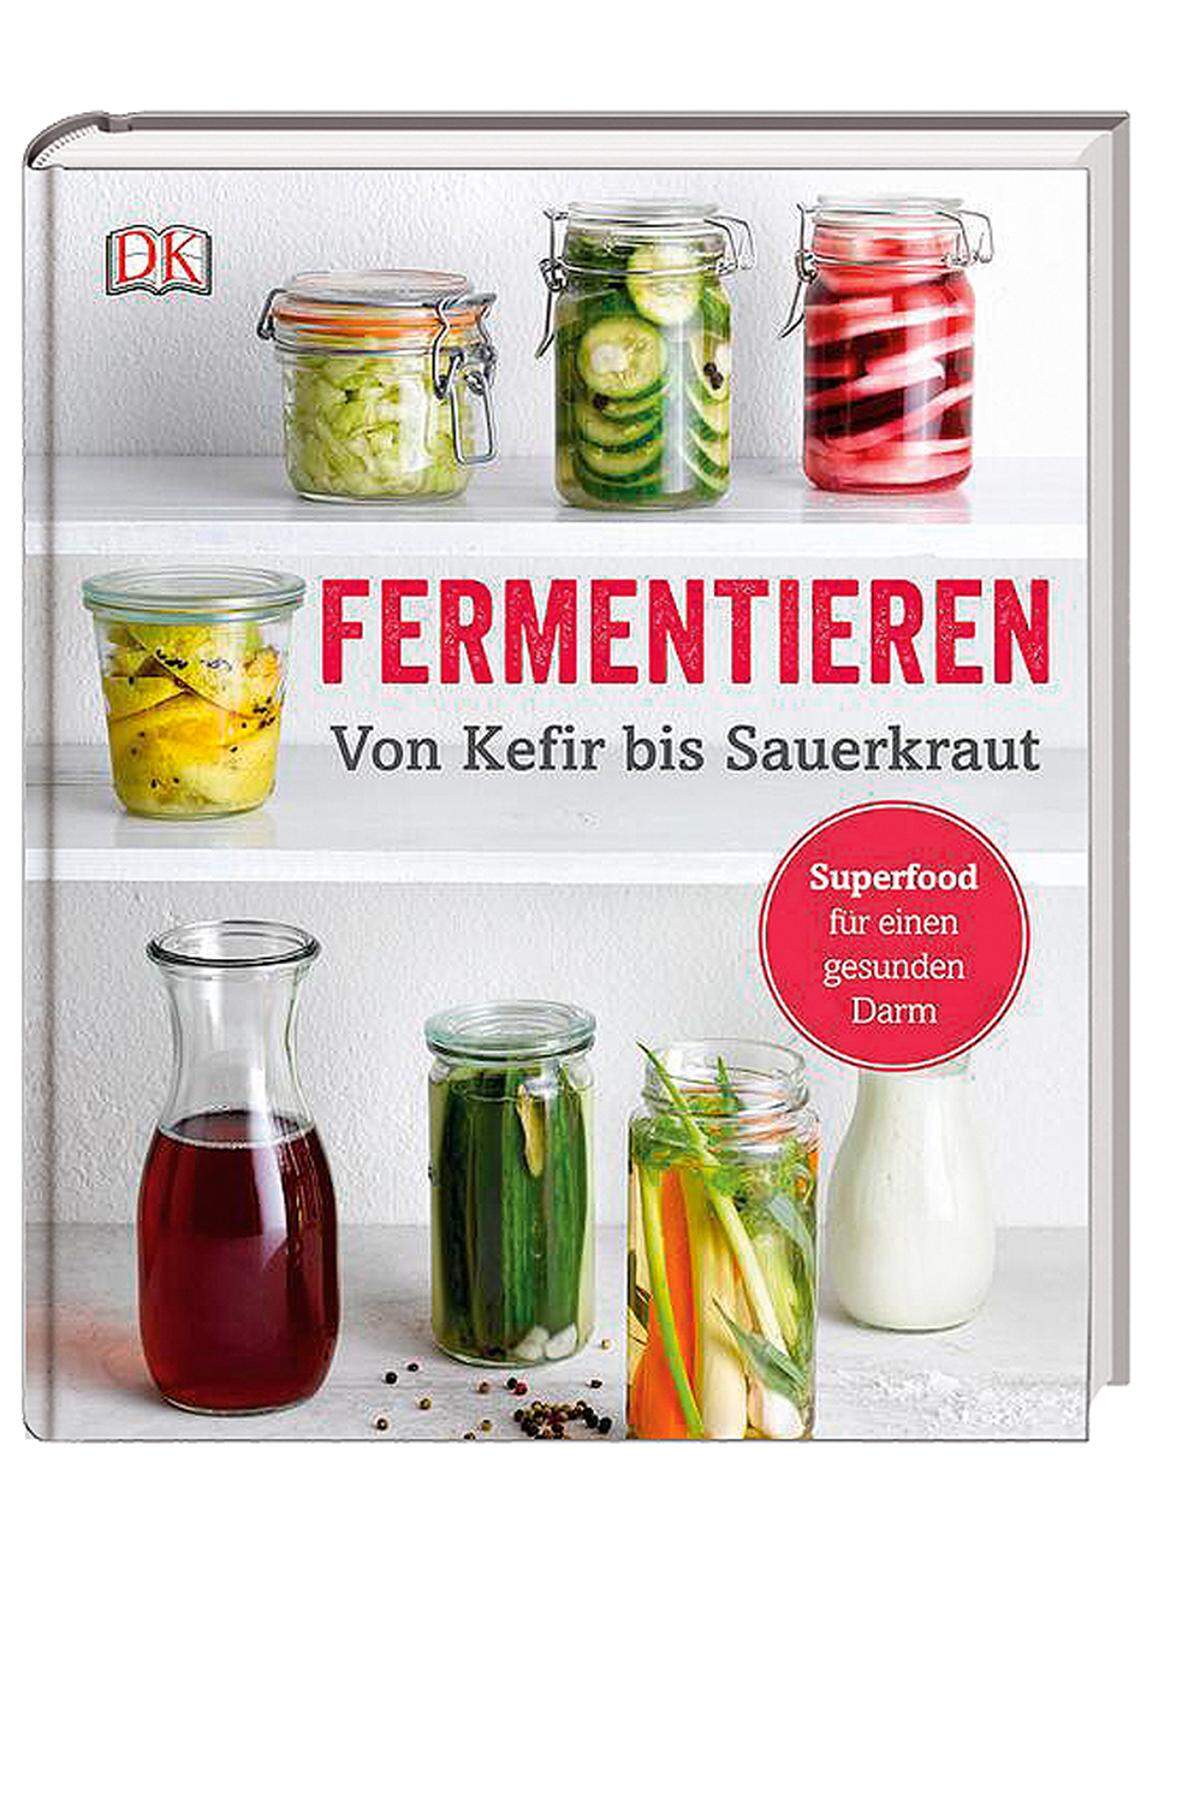 Dorling Kindersley. „Fermentieren. Von Kefir bis Sauerkraut“, 17,50 €.